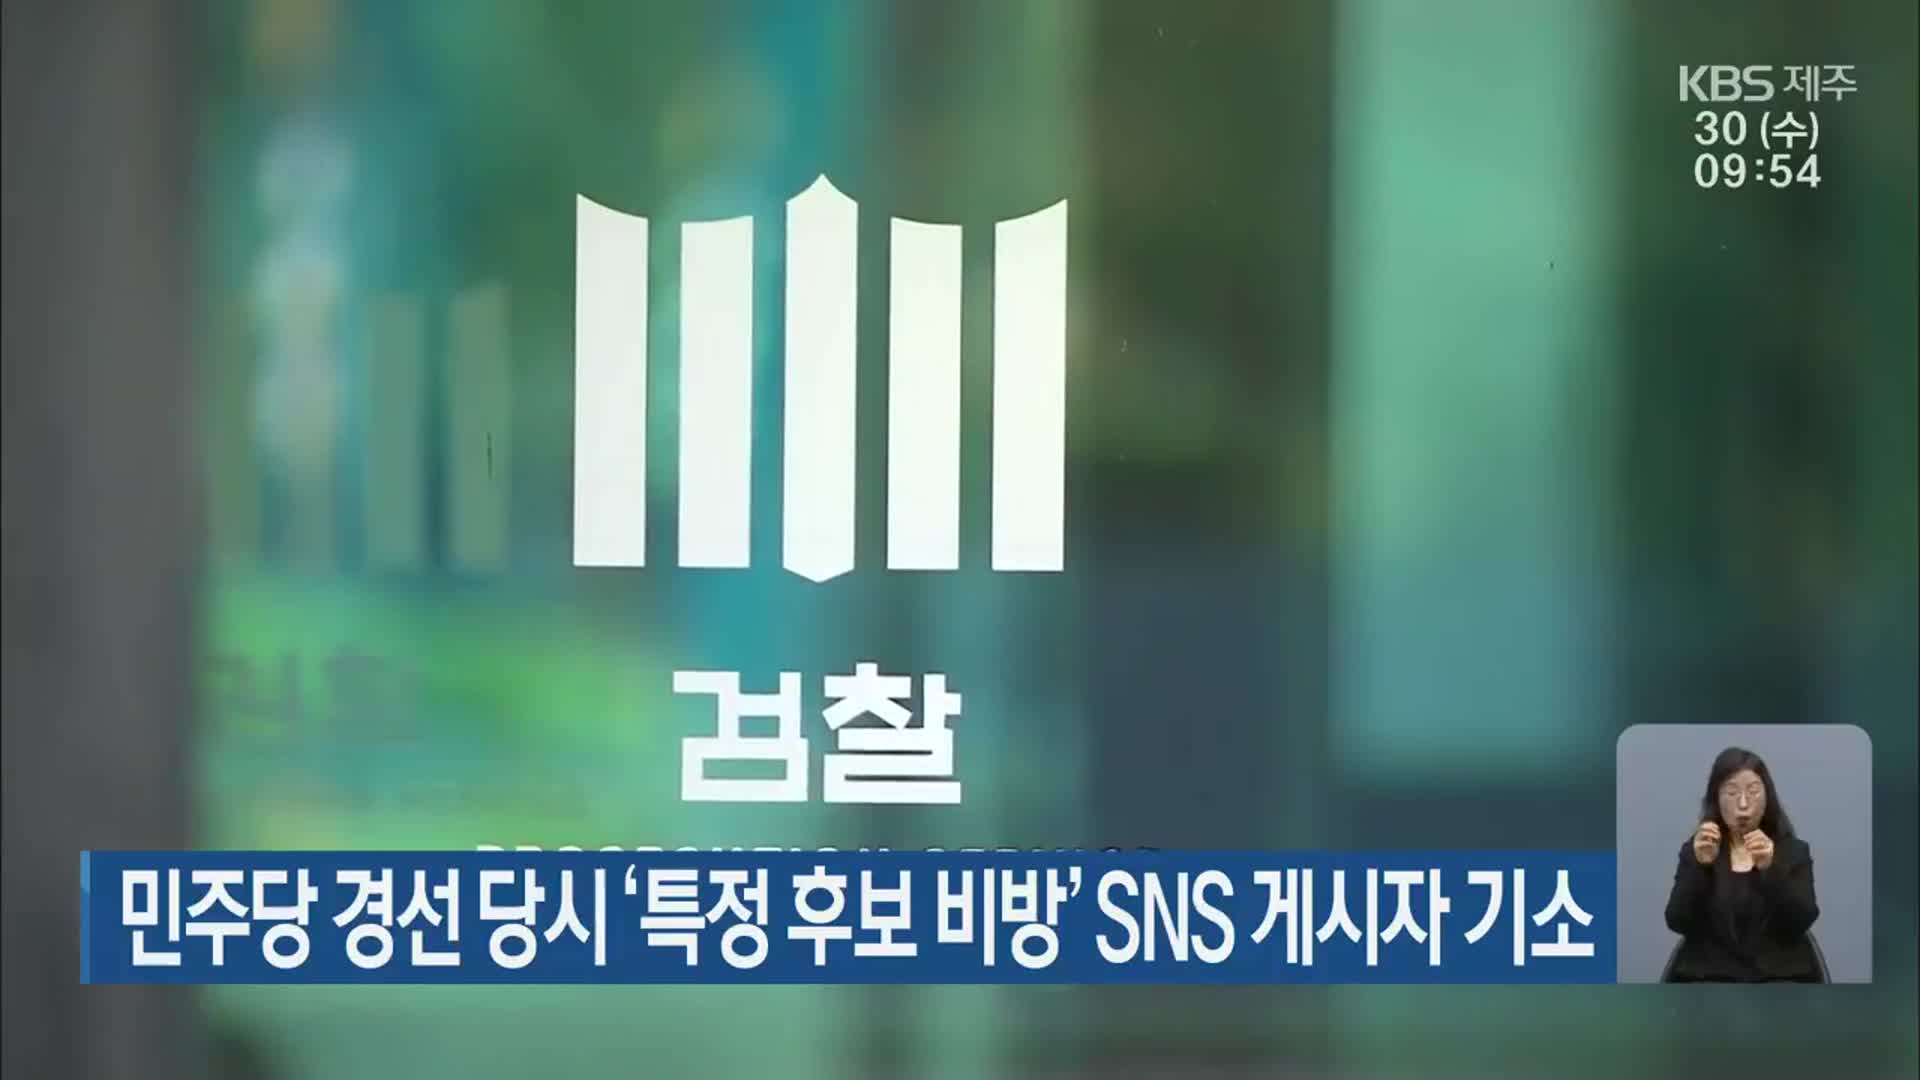 민주당 경선 당시 ‘특정 후보 비방’ SNS 게시자 기소